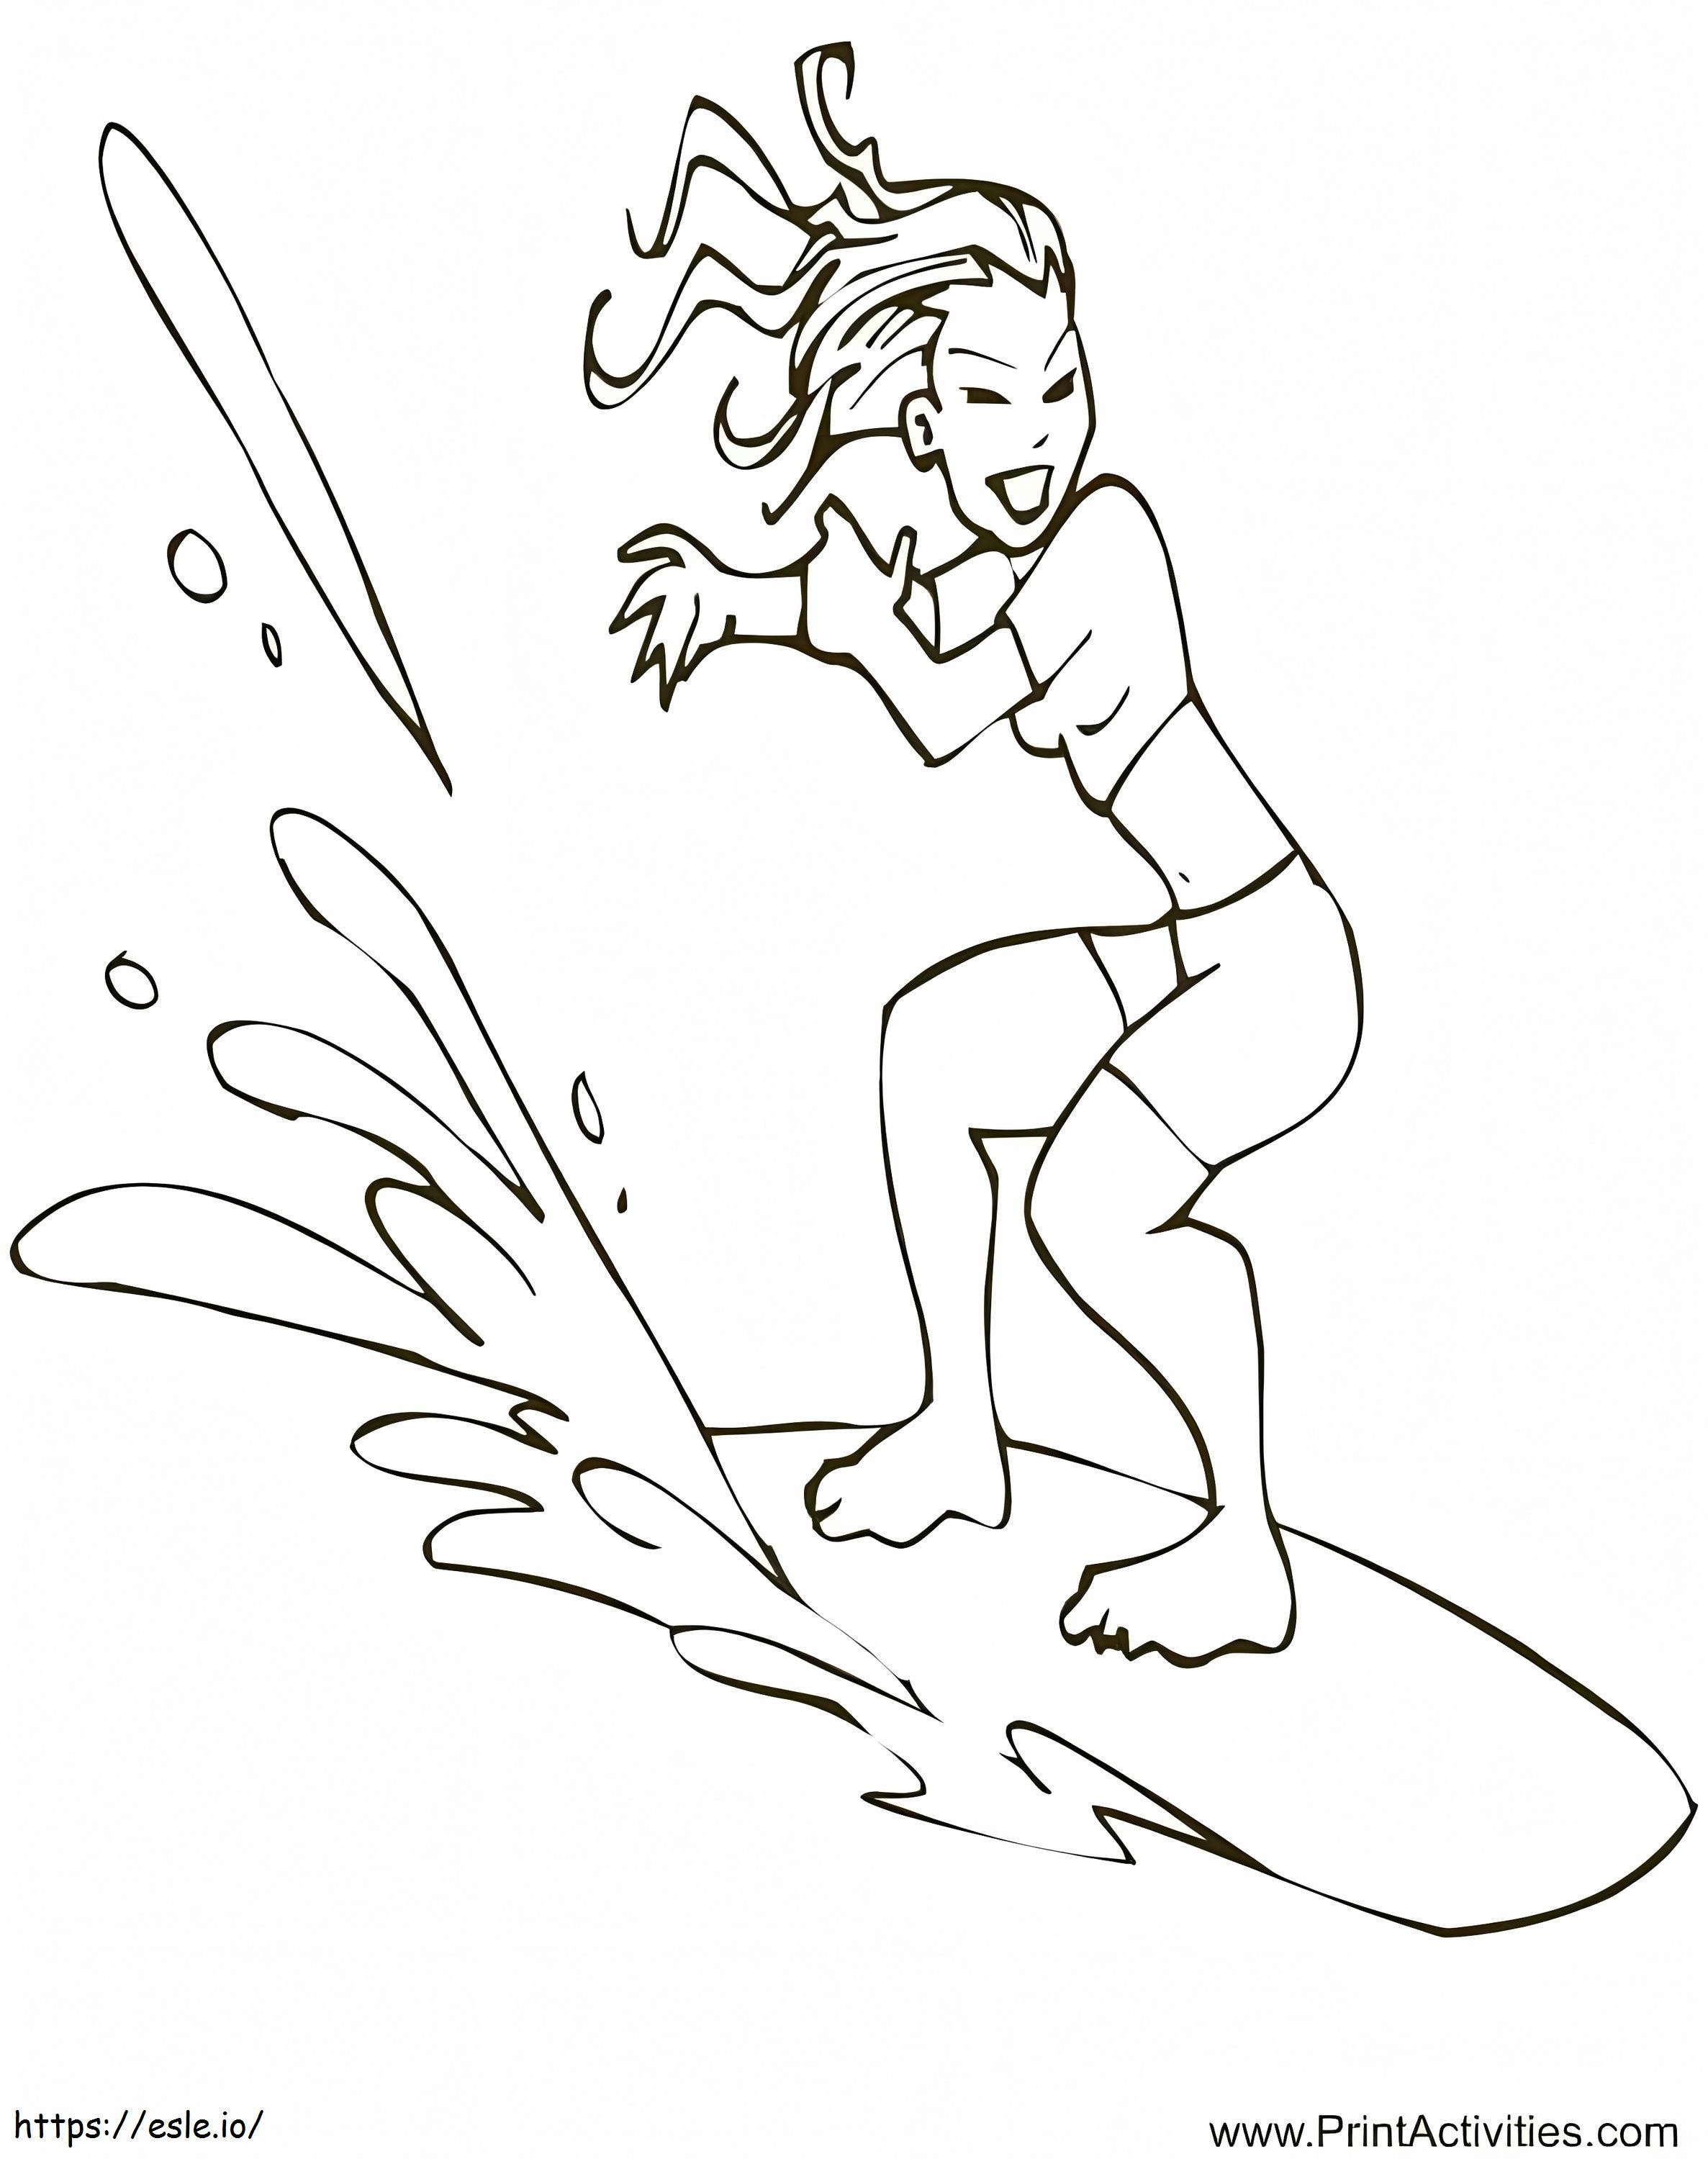 Dziewczyna Surfuje kolorowanka